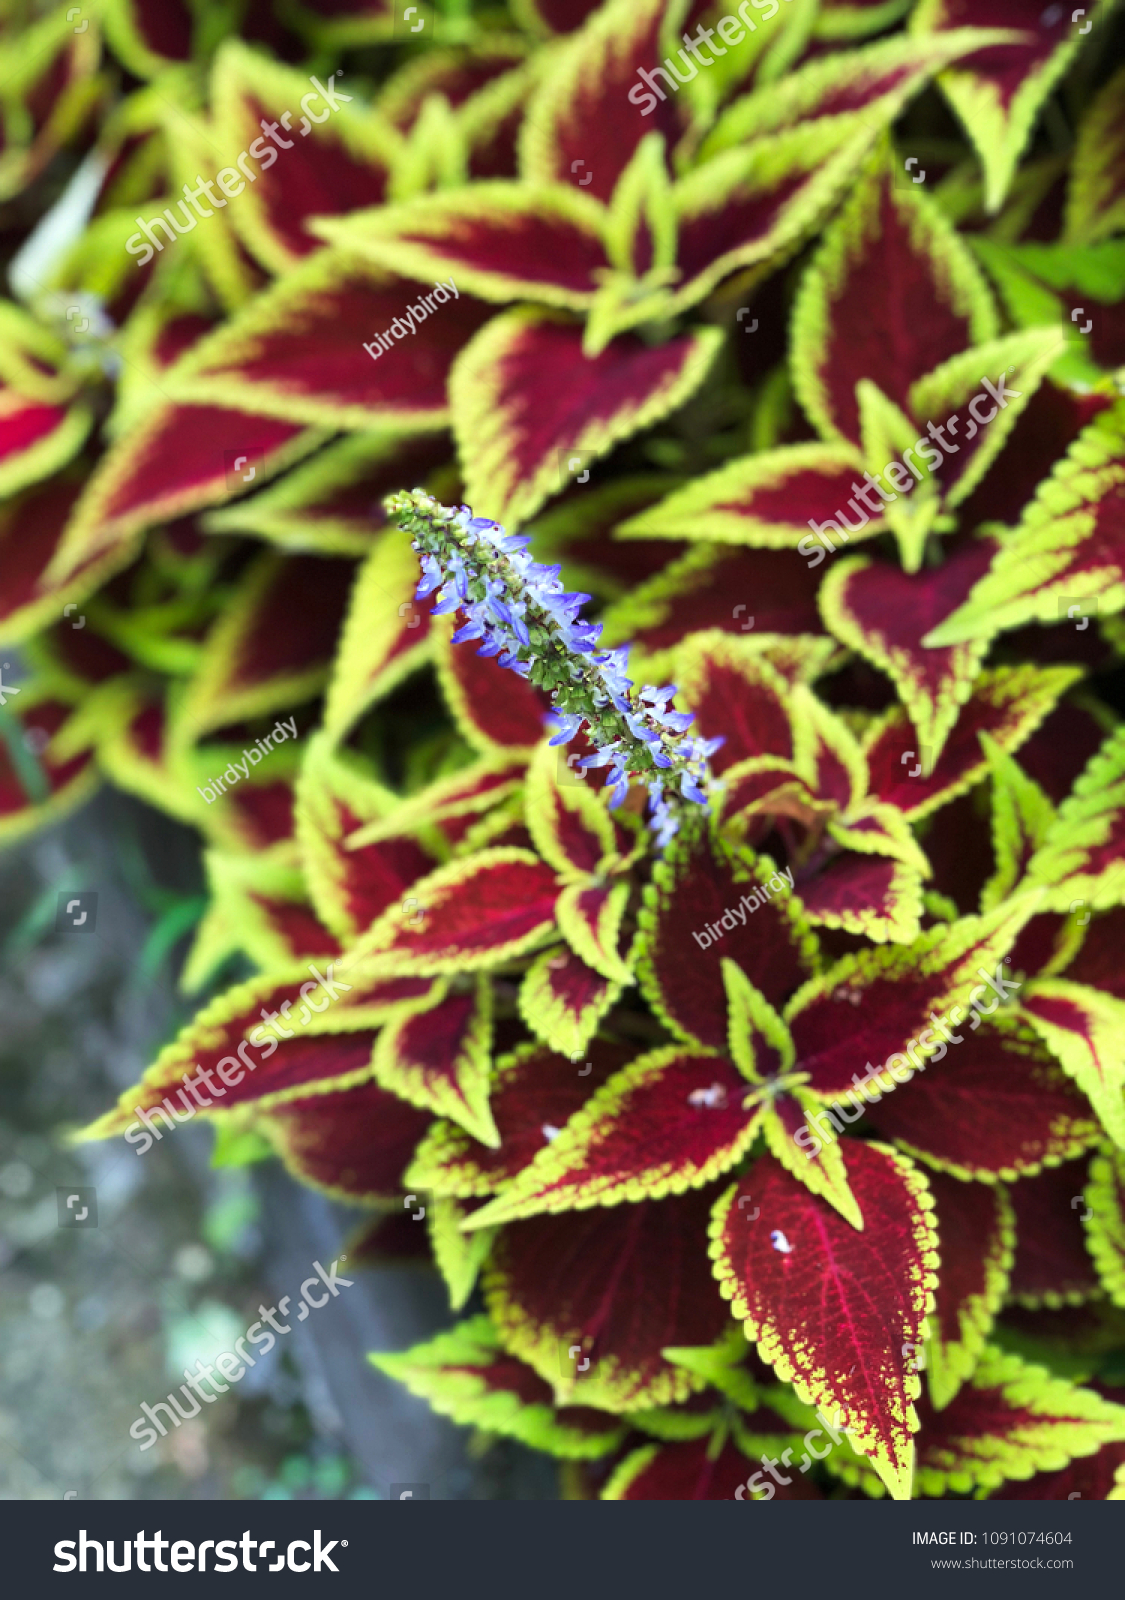 Coleus Blumei Plant Texture Leaves Closeup Nature Stock Image 1091074604